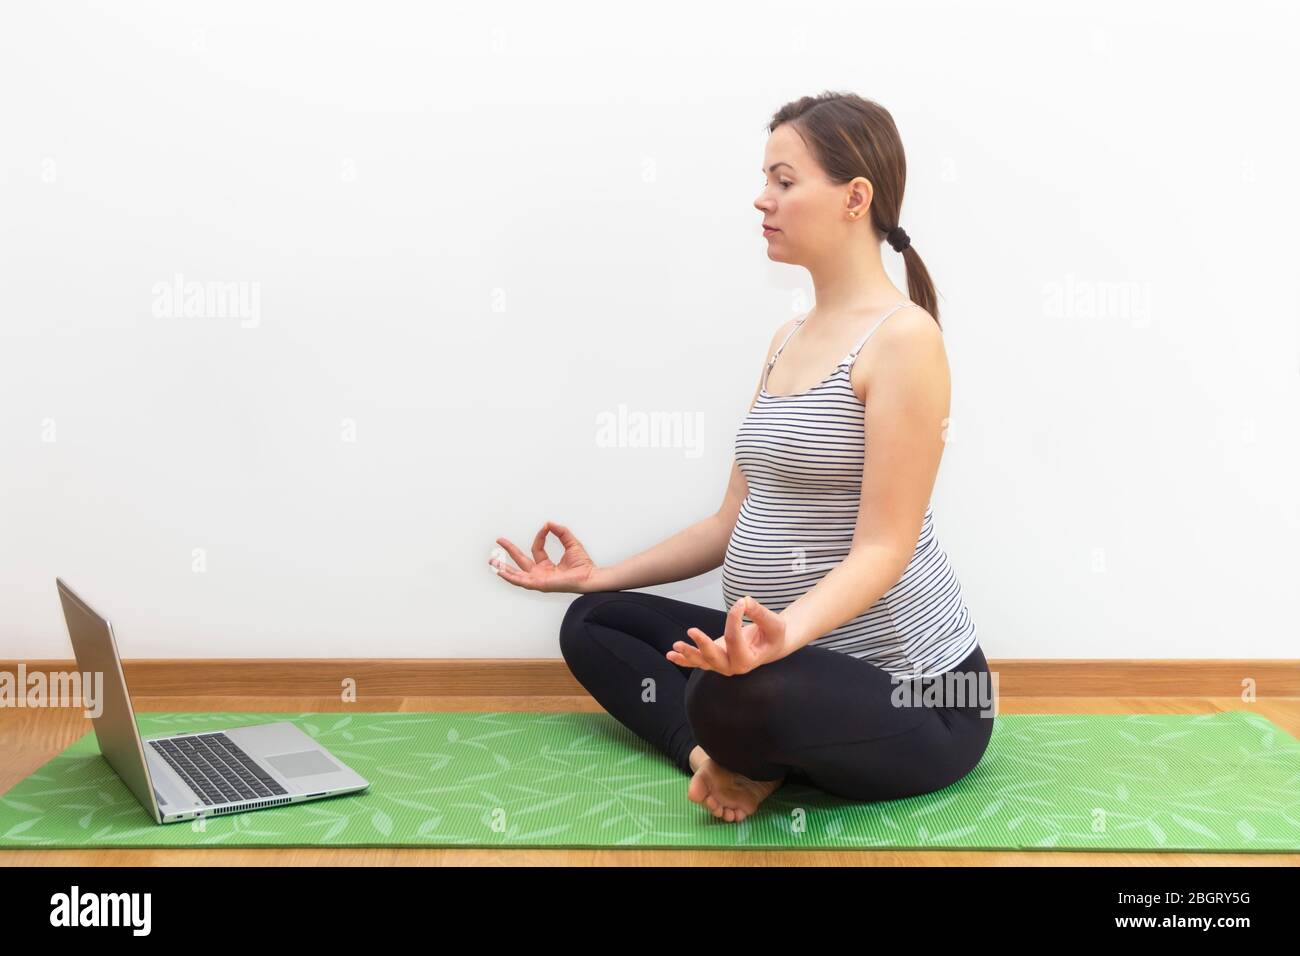 Grossesse yoga à la maison pendant la quarantaine à domicile, concept d'auto-quarantaine. Jeune femme enceinte pratiquant le yoga en ligne à la maison avec ordinateur portable Banque D'Images